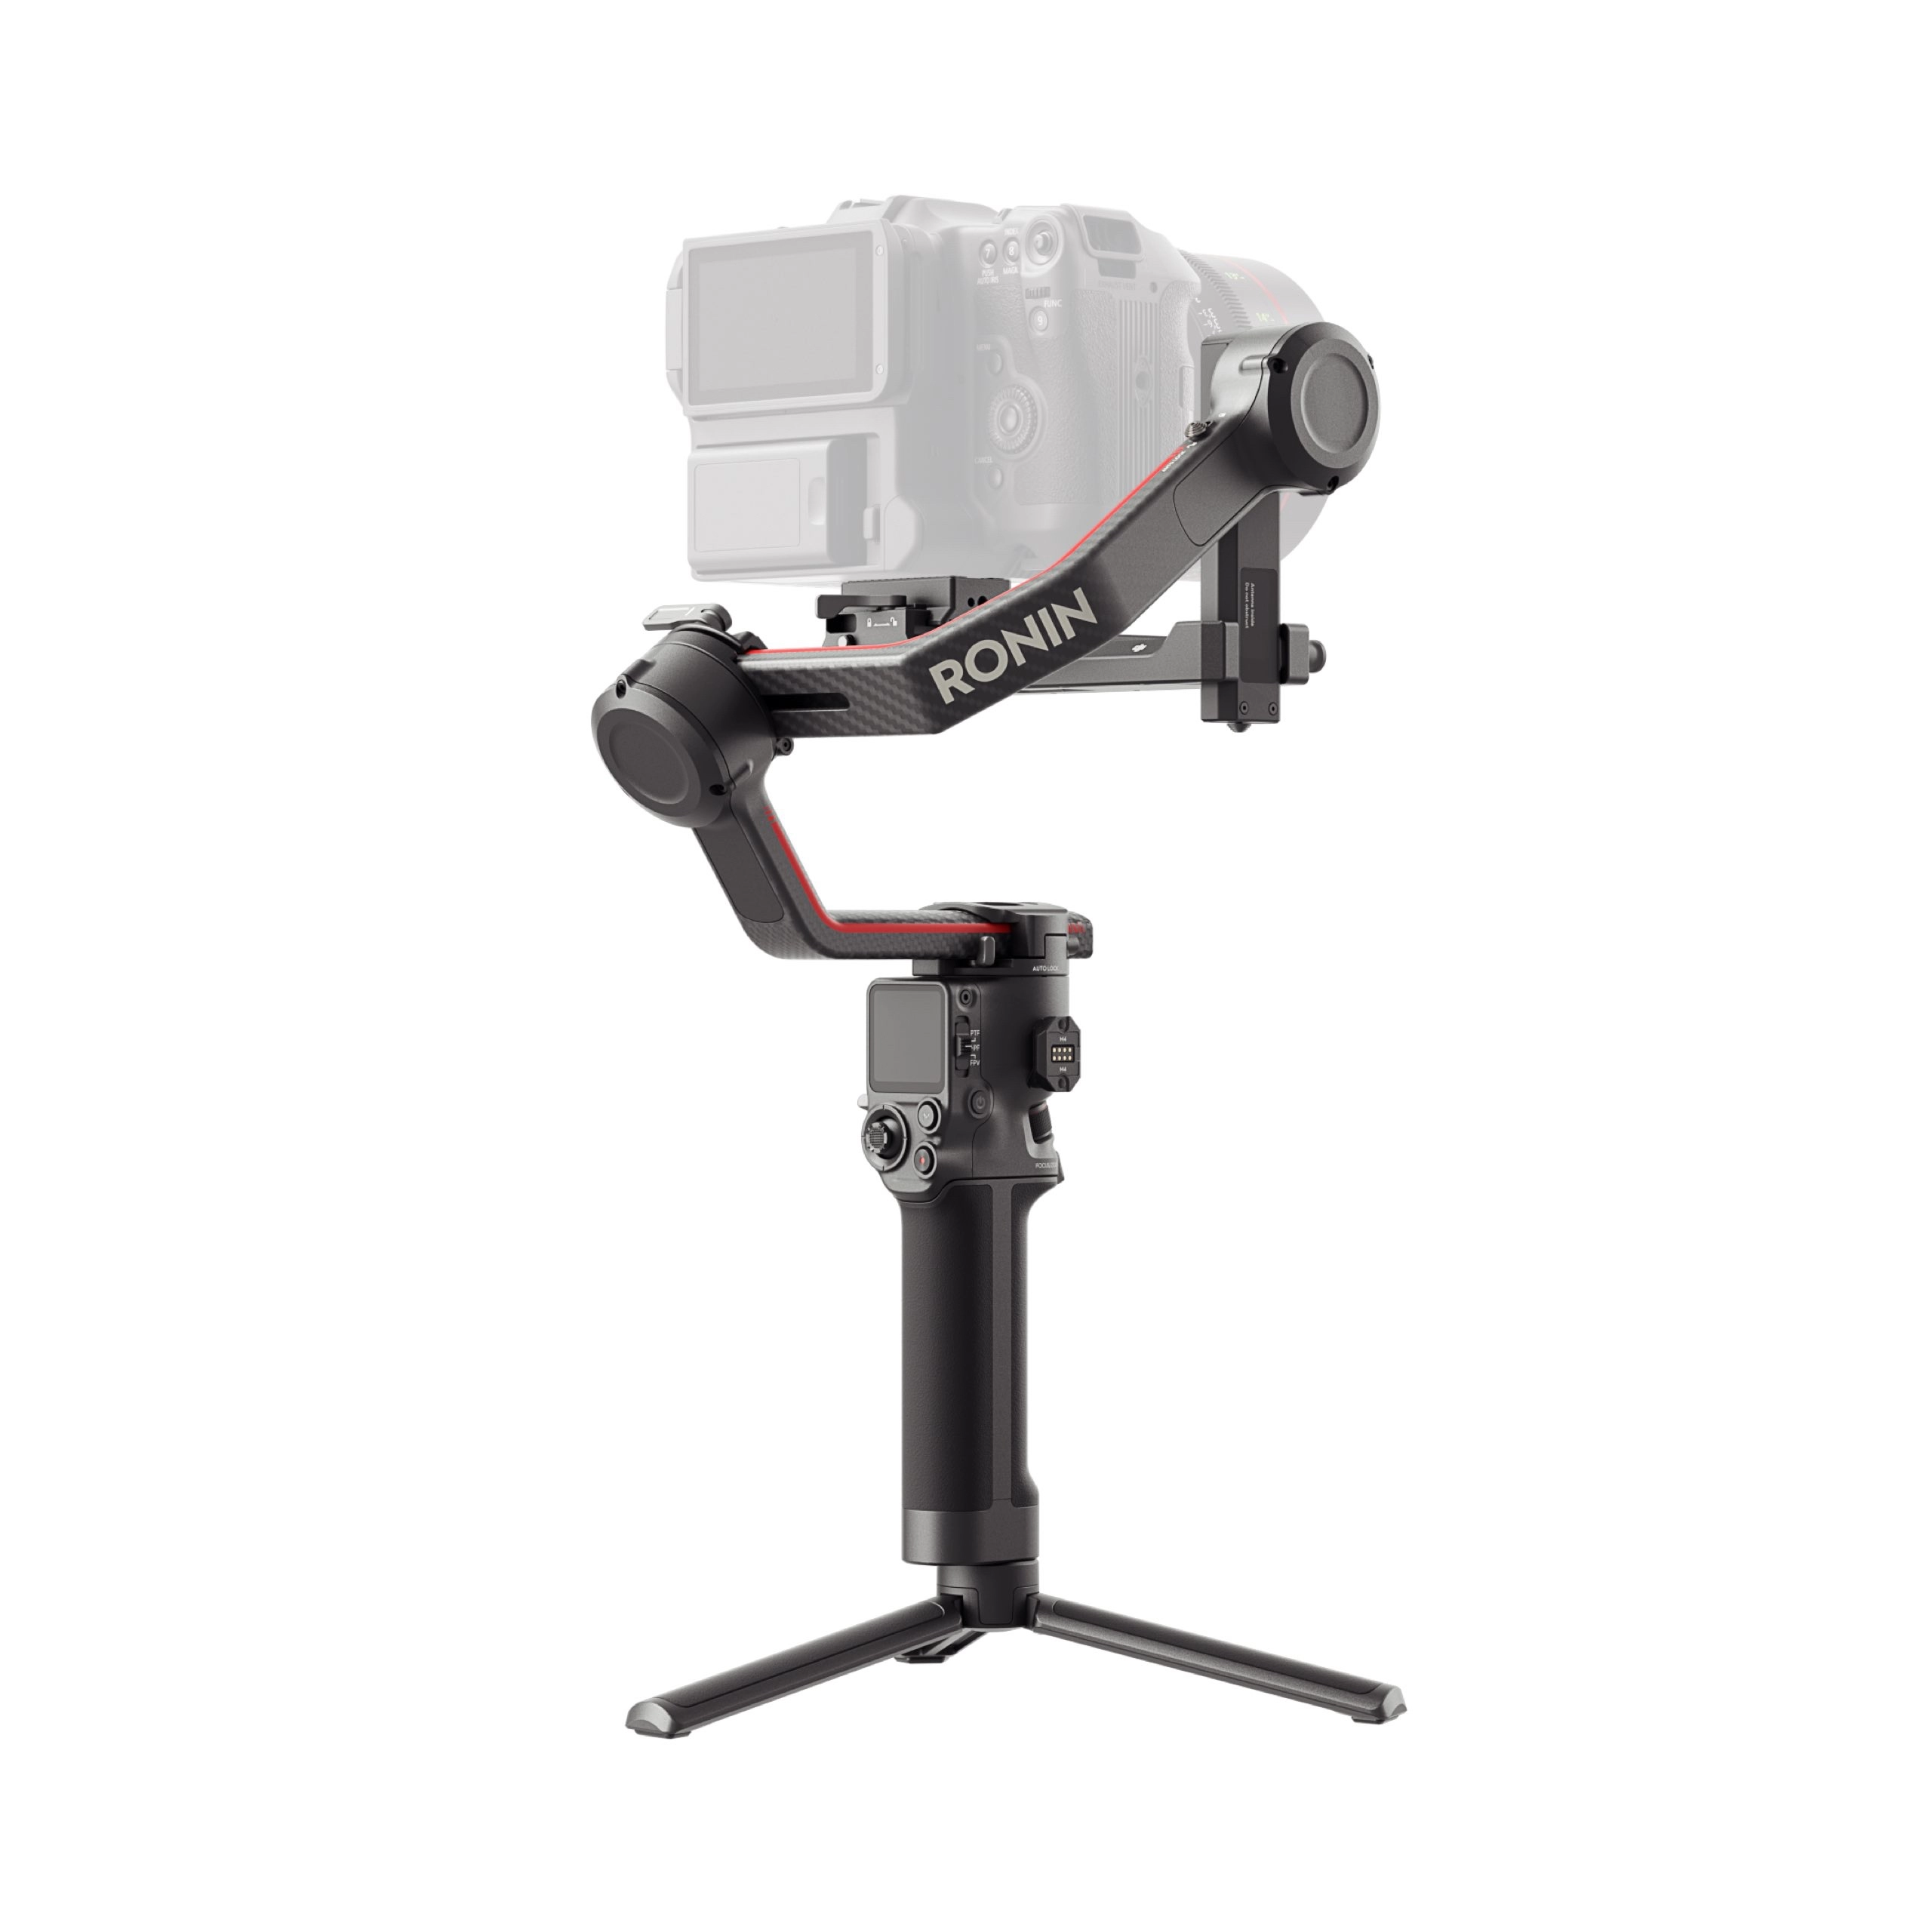 (929761) Стабилизатор камеры для беззеркальных и зеркальных камер DJI RS3 Pro